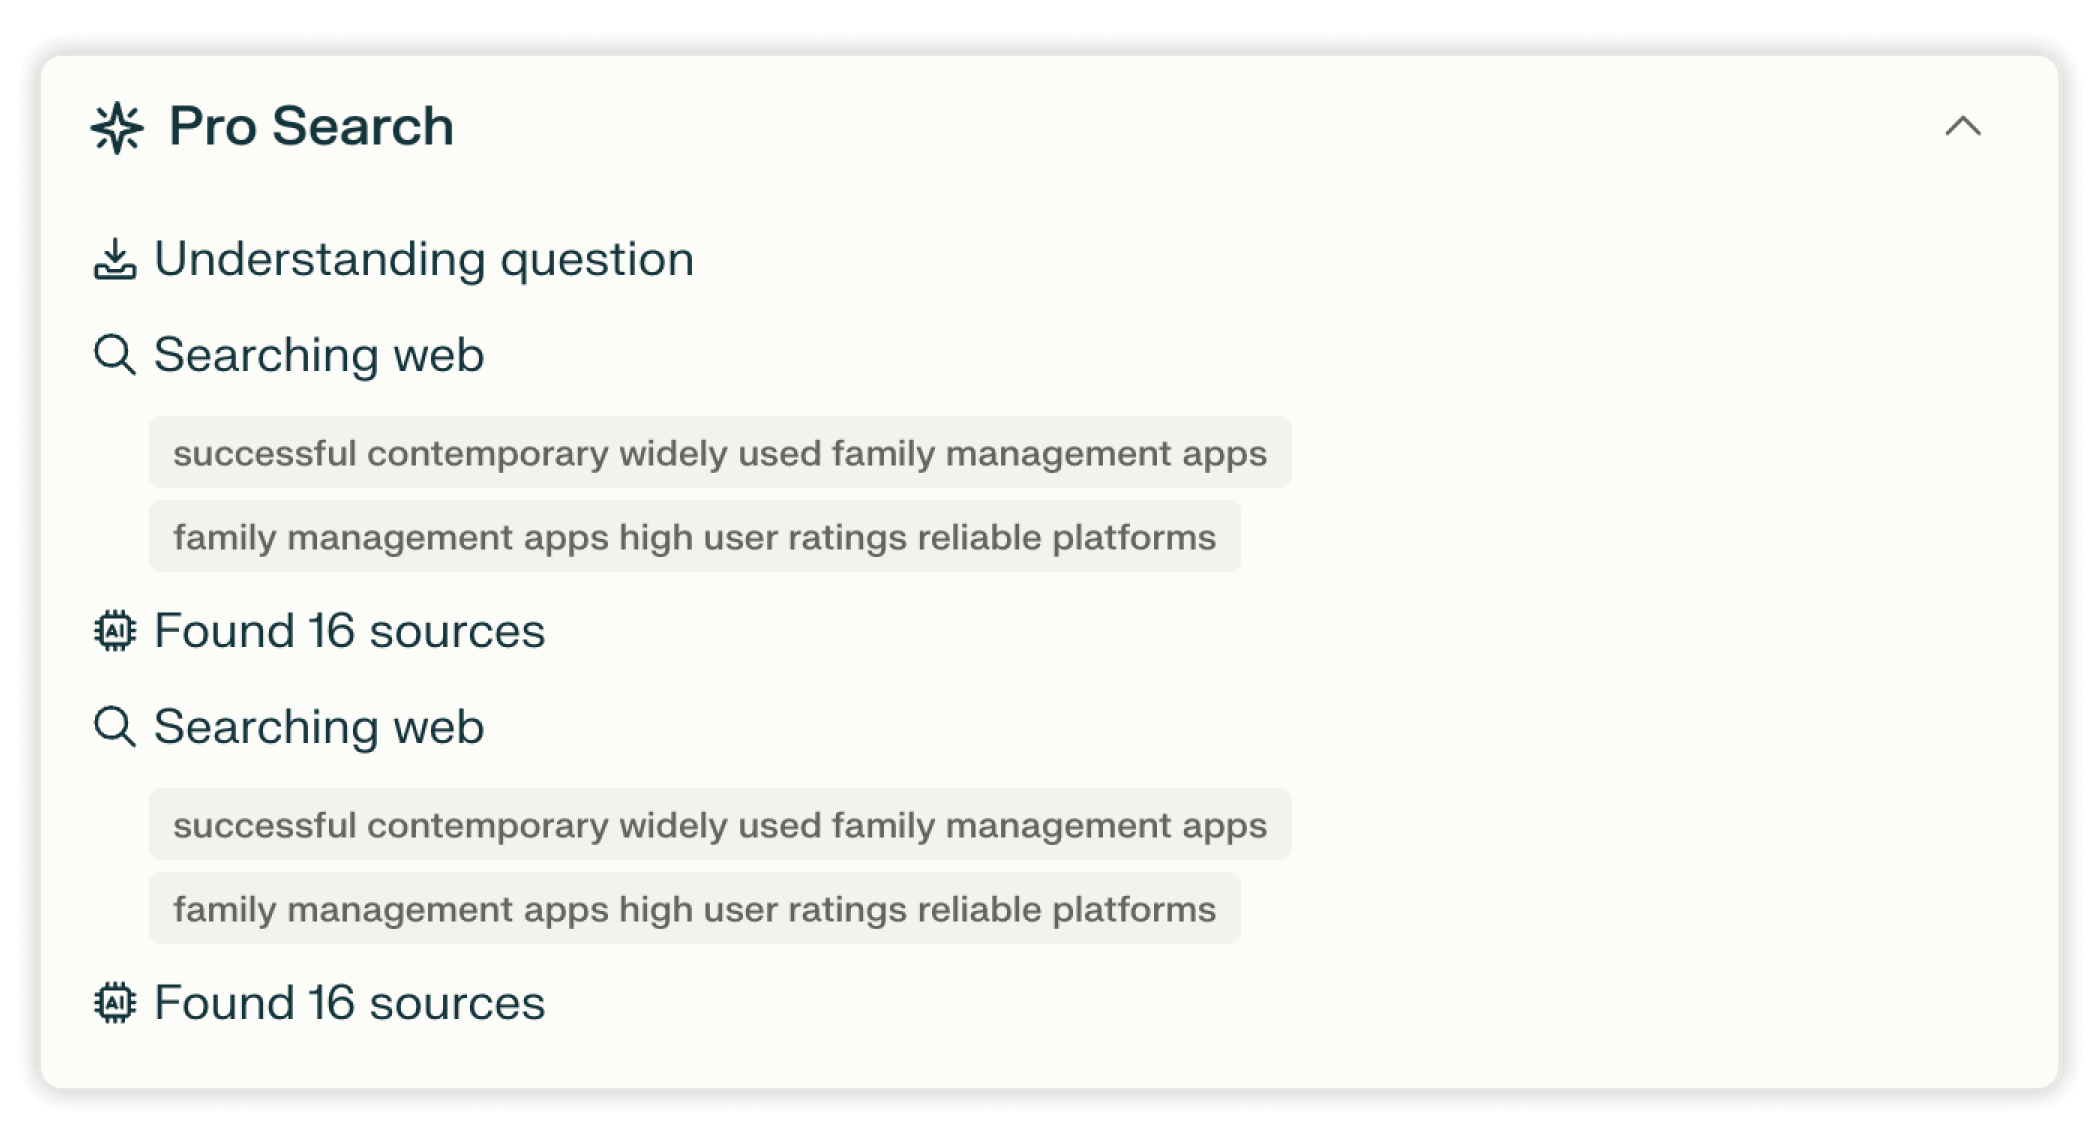 צילום מסך של פיצ׳ר ה Pro Search ב-Perplexity המציג את תהליך ביצוע חיפוש באינטרנט ואת ניסוח תגובת הבוטית. השלב הראשון הוא 'הבנת השאלה', שם הבוטית זיהתה מונחי מפתח כמו "אפליקציות מוצלחות לניהול משפחה" ו"אפליקציות לניהול משפחה, פלטפורמות אמינות בדירוג גבוה של משתמשים". השלב השני הוא 'חיפוש באינטרנט', בו הבוטית מאשרת שמצאה "16 מקורות" הקשורים למונחי החיפוש.